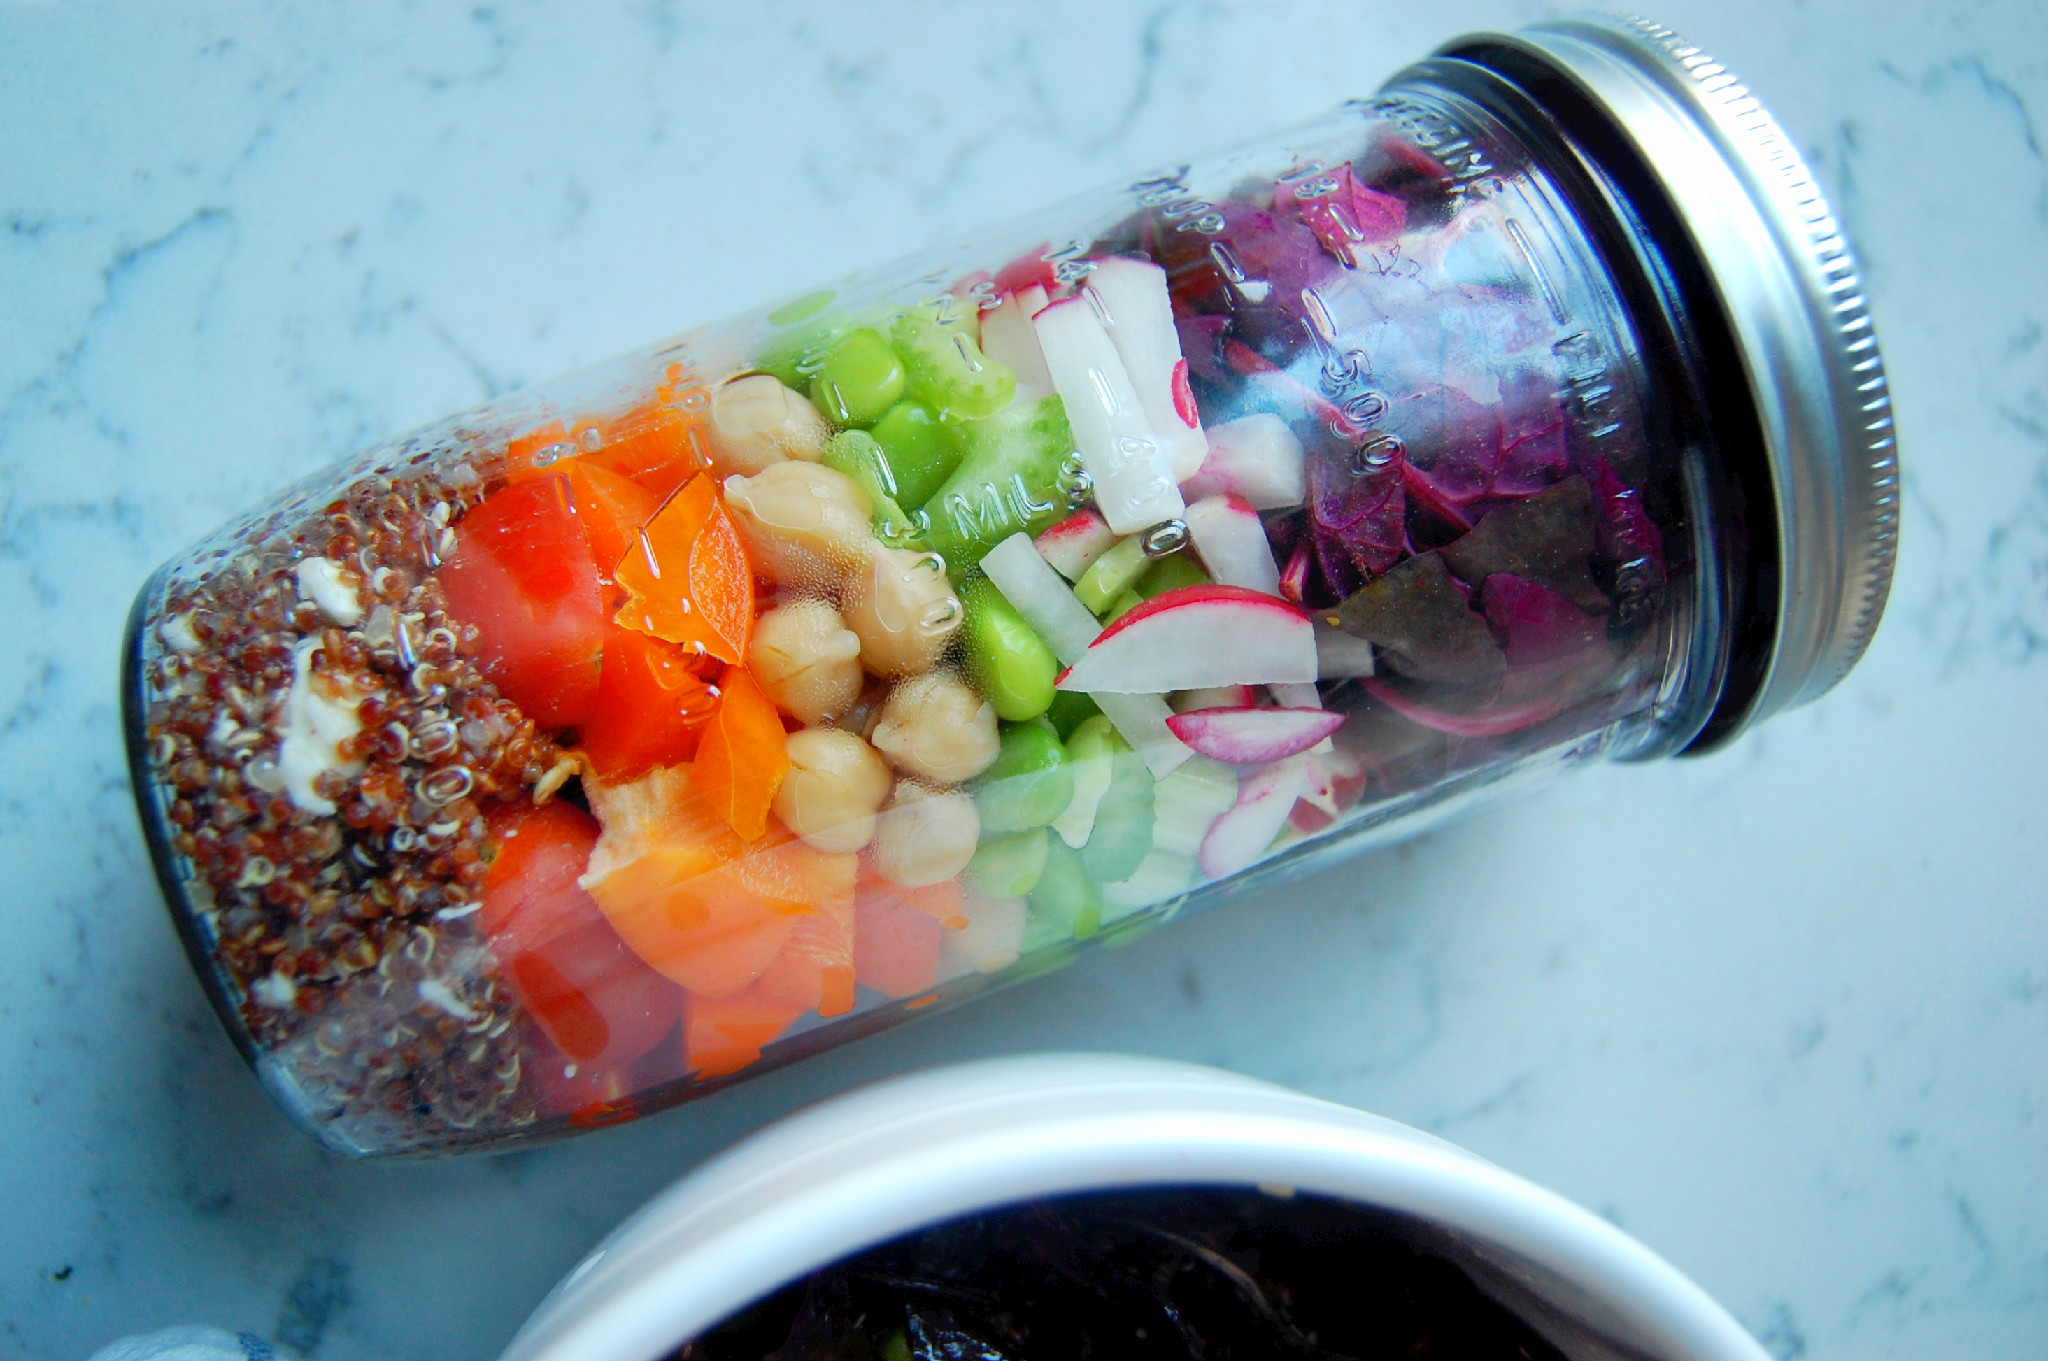 7 Best Mason Jar Salad Recipes - Easy Salads in a Jar